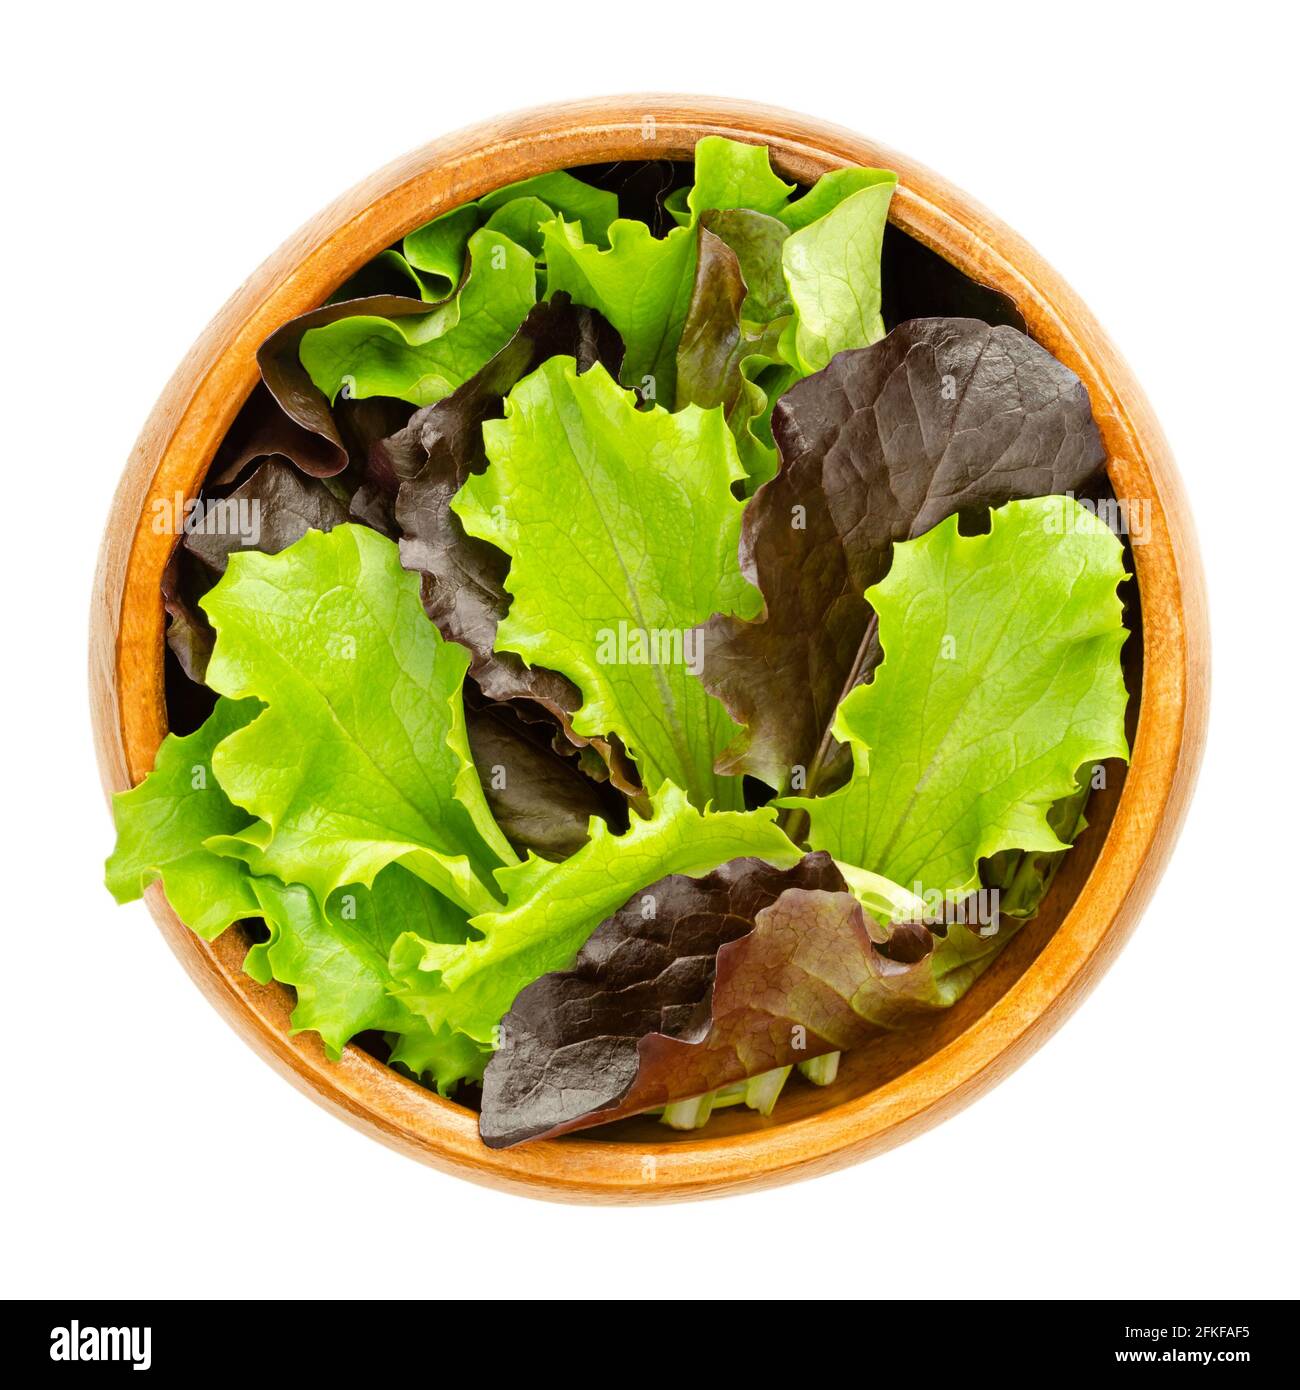 Lockerer Blattsalat in einer Holzschüssel. Frisch gepflückte grüne und rote Blätter von Zuckergalat, auch Pflücken- oder Looseleaf-Salat. Roh, biologisch, vegan. Stockfoto